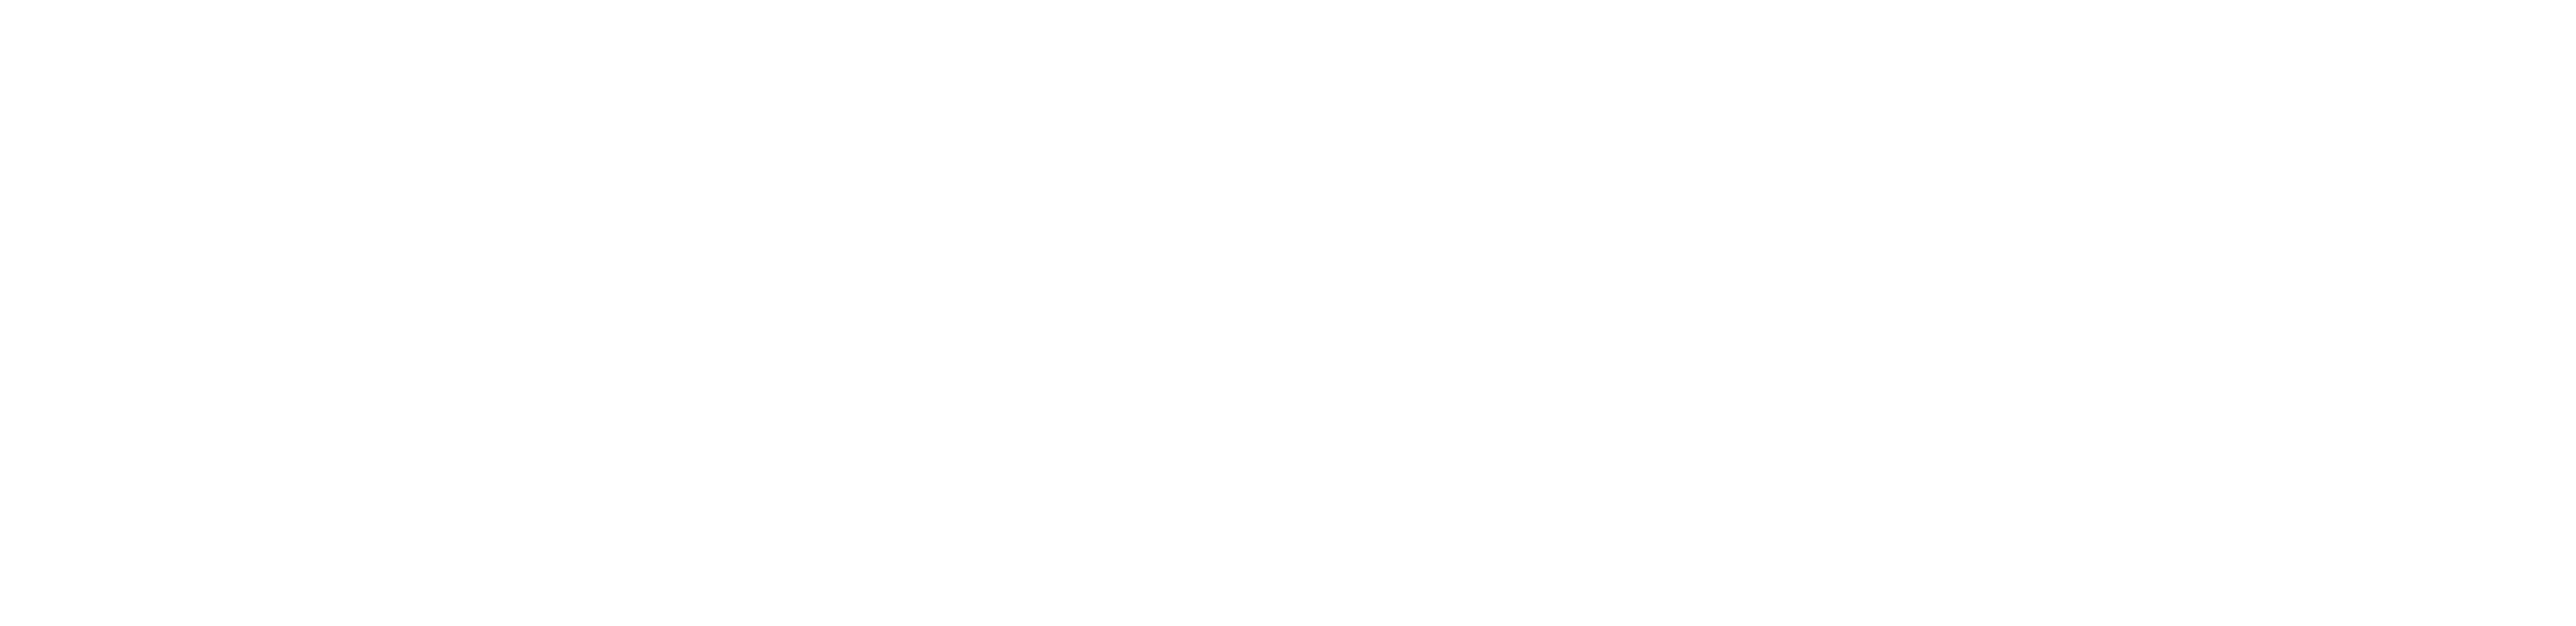 Cerner Corporation Logo - Behavioral Health | Cerner